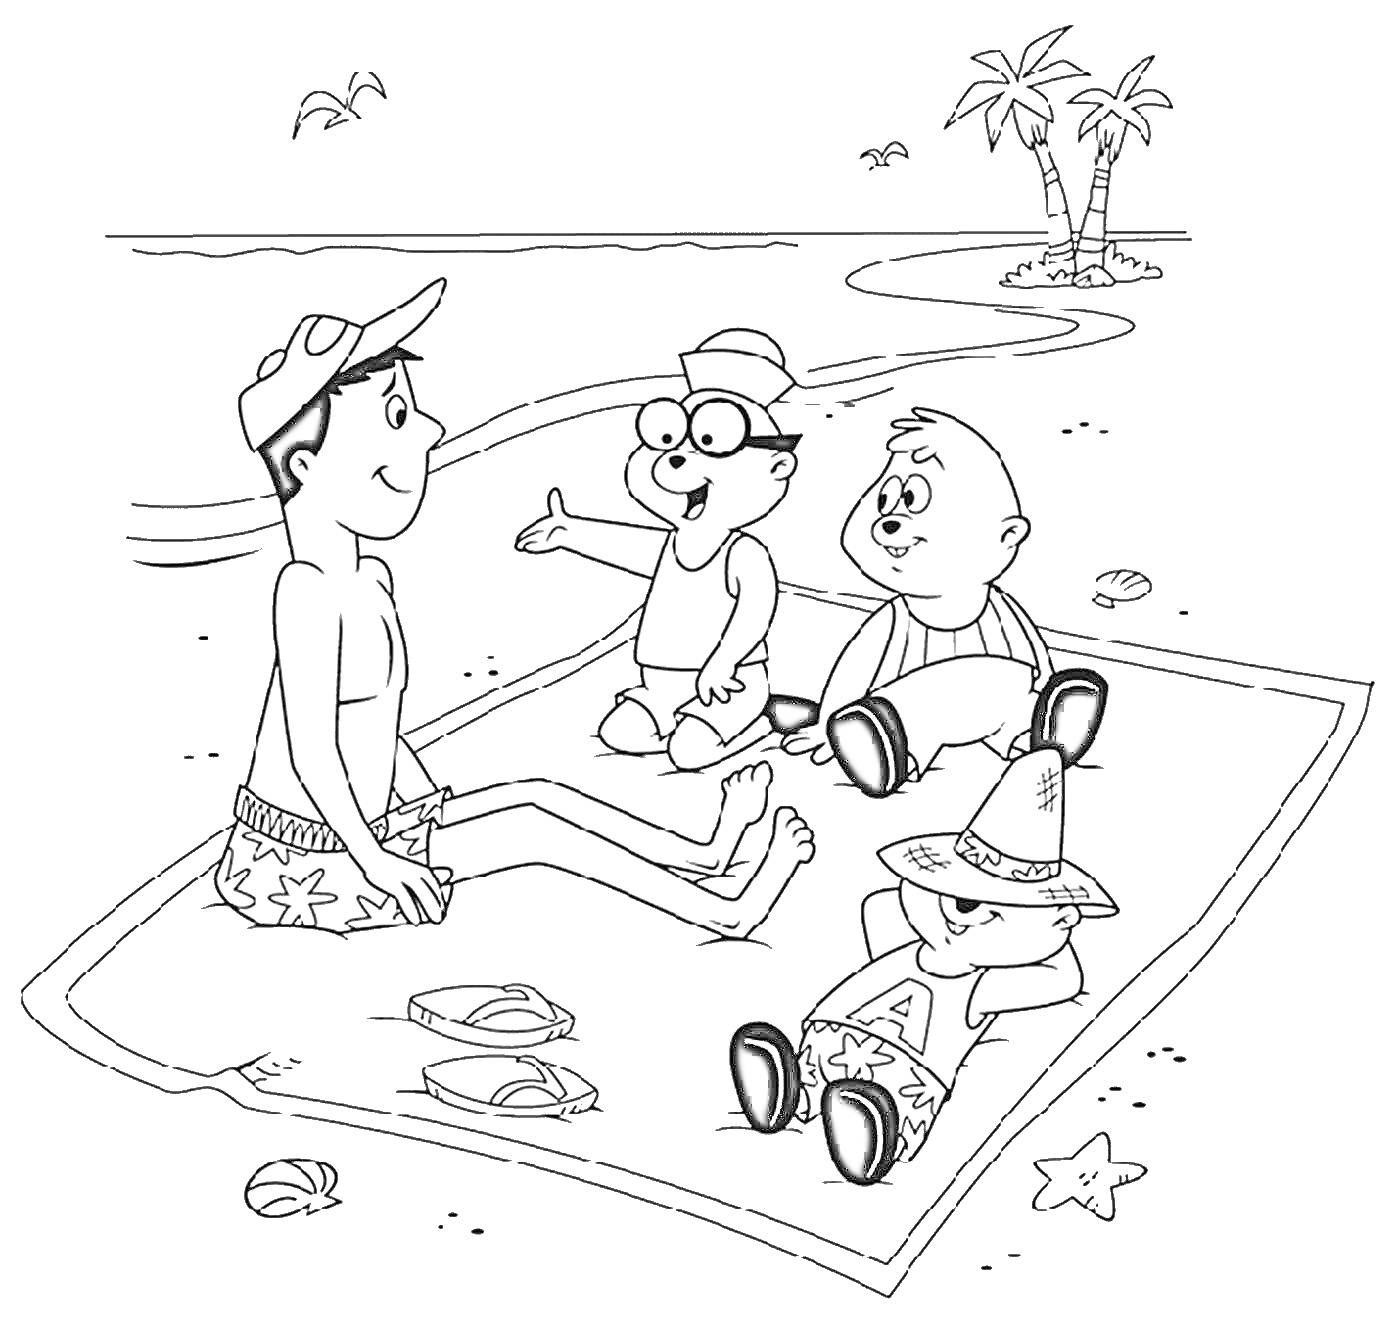 Люди на пляже: четверо отдыхающих на покрывале, пара сланцев, морская звезда, пальмы и волны на заднем плане